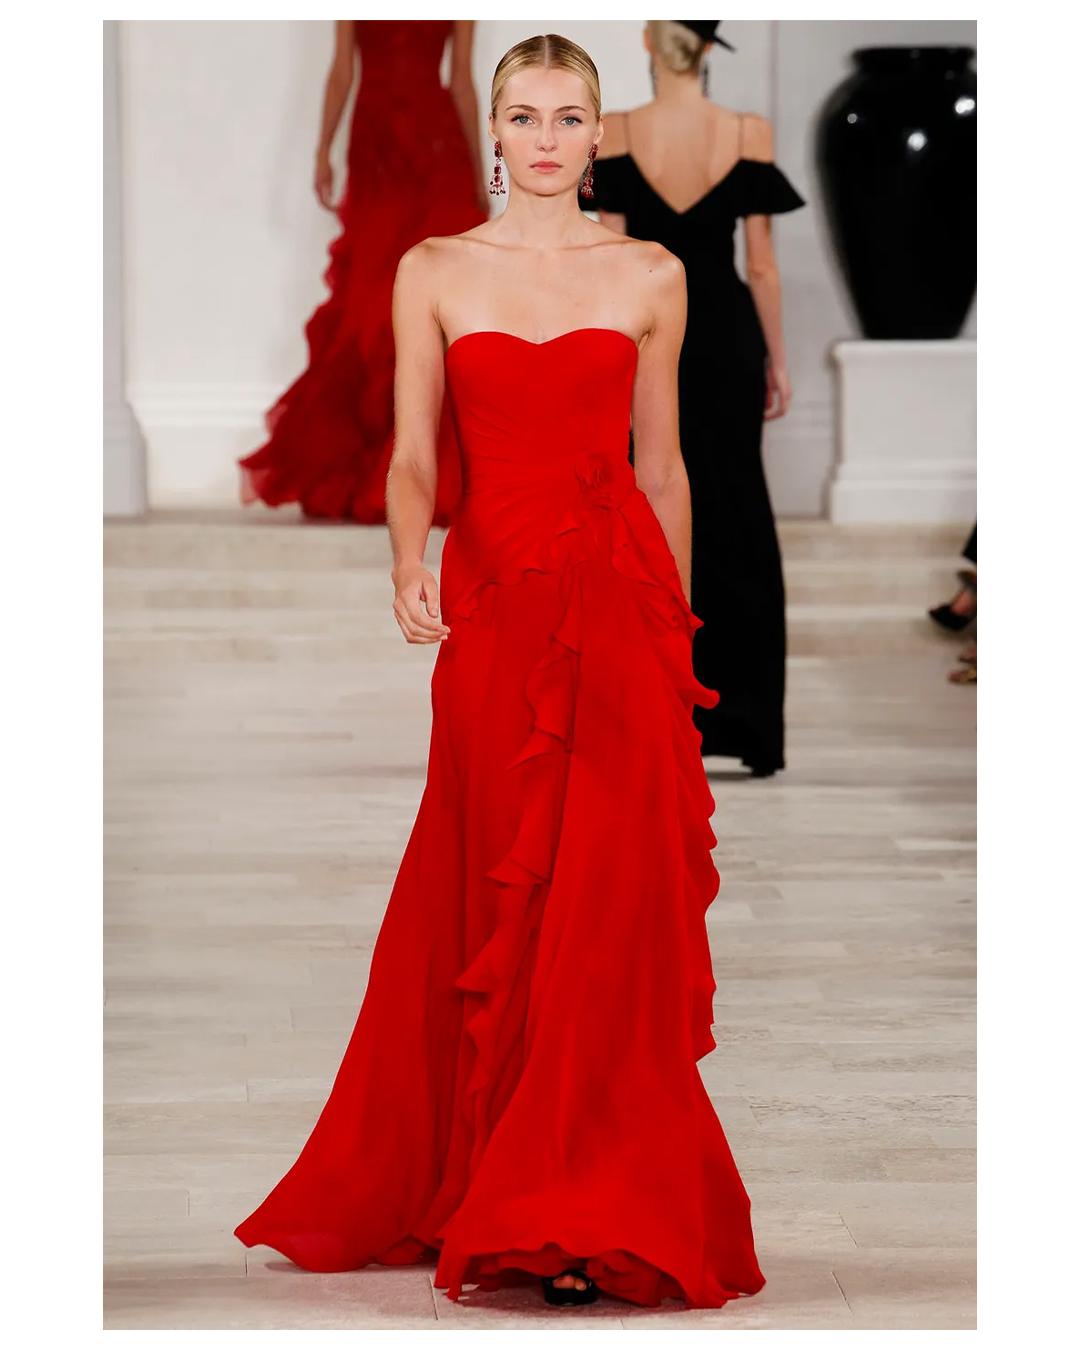 Ralph Lauren SS 2013 strapless bustier red sweetheart neck train silk gown dress 14